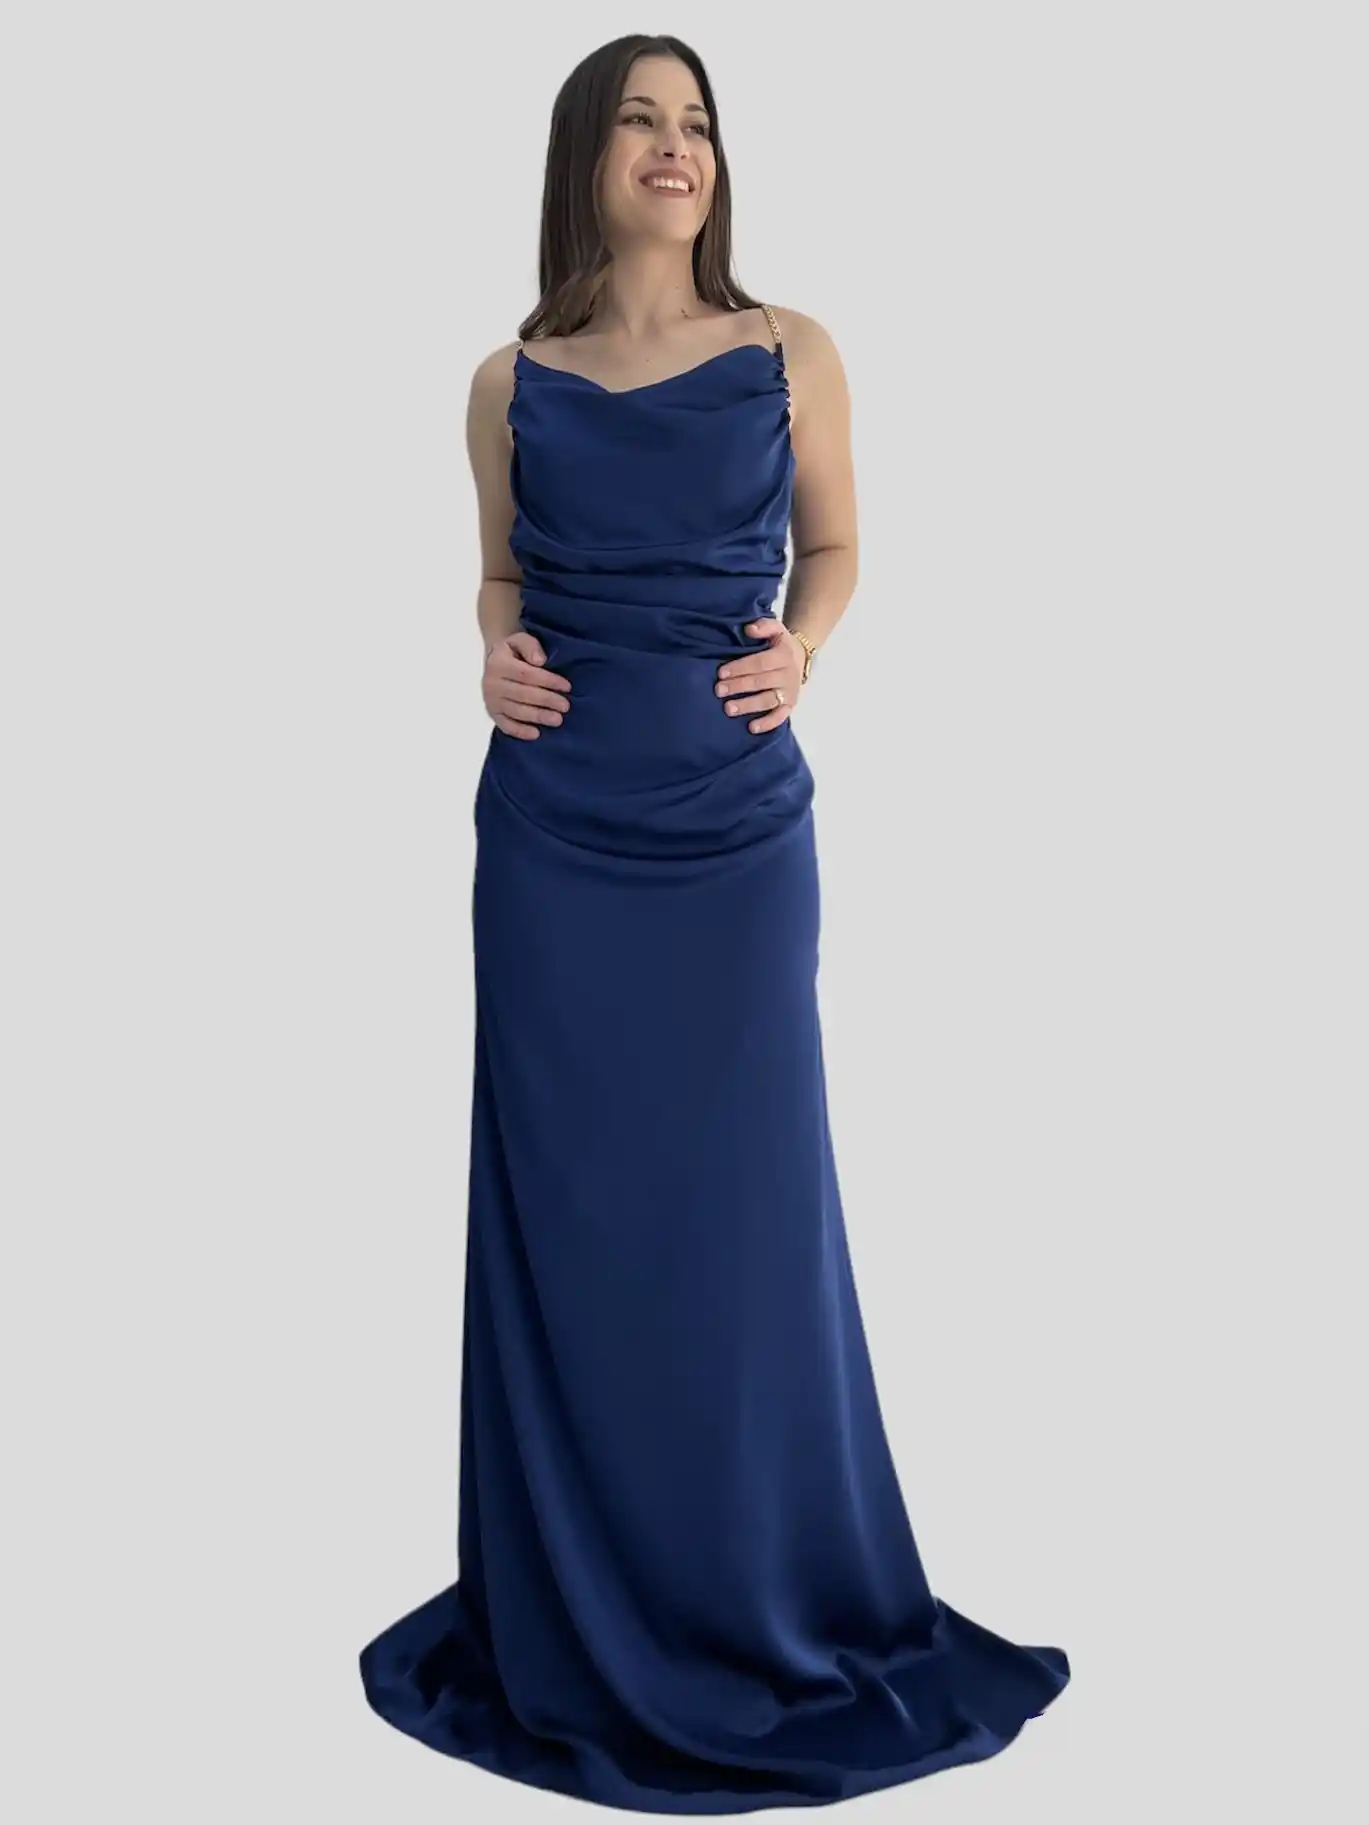 Μπλε σατέν φόρεμα υψηλής ραπτικής